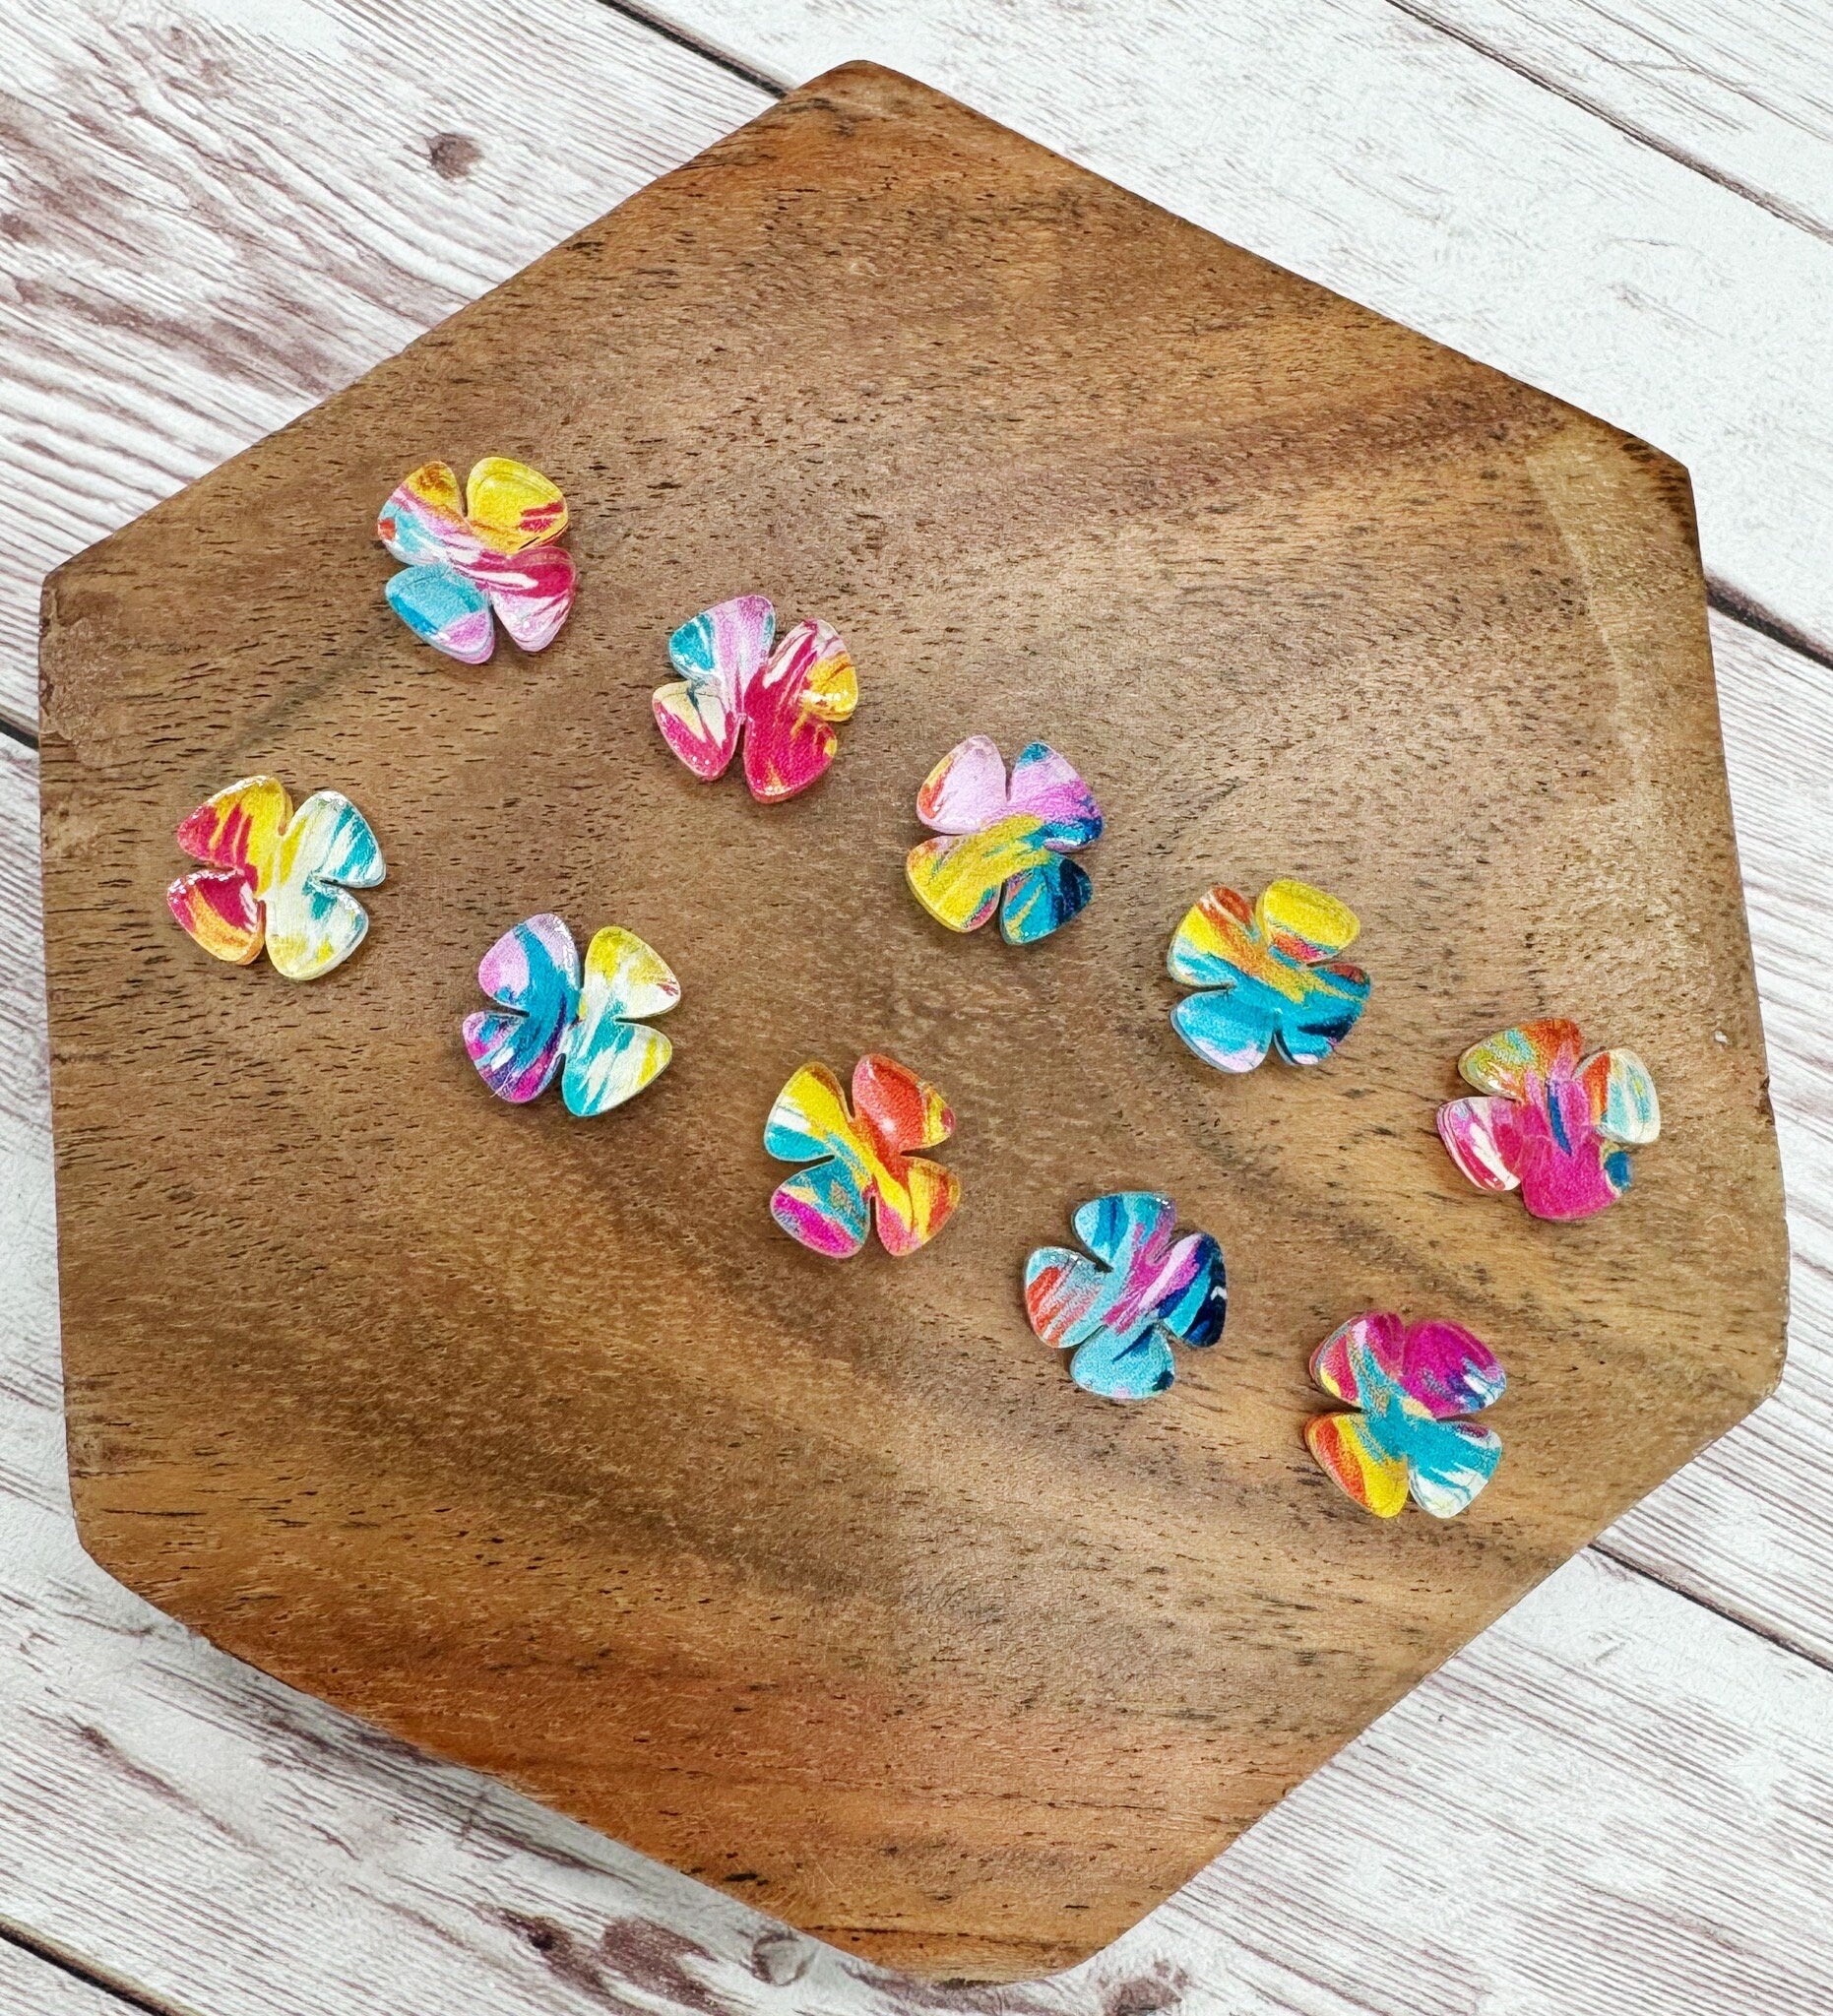 Colorful Acrylic Pinwheel Flower Stud Earring Blanks Set of 5 Pair DIY Jewelry Making